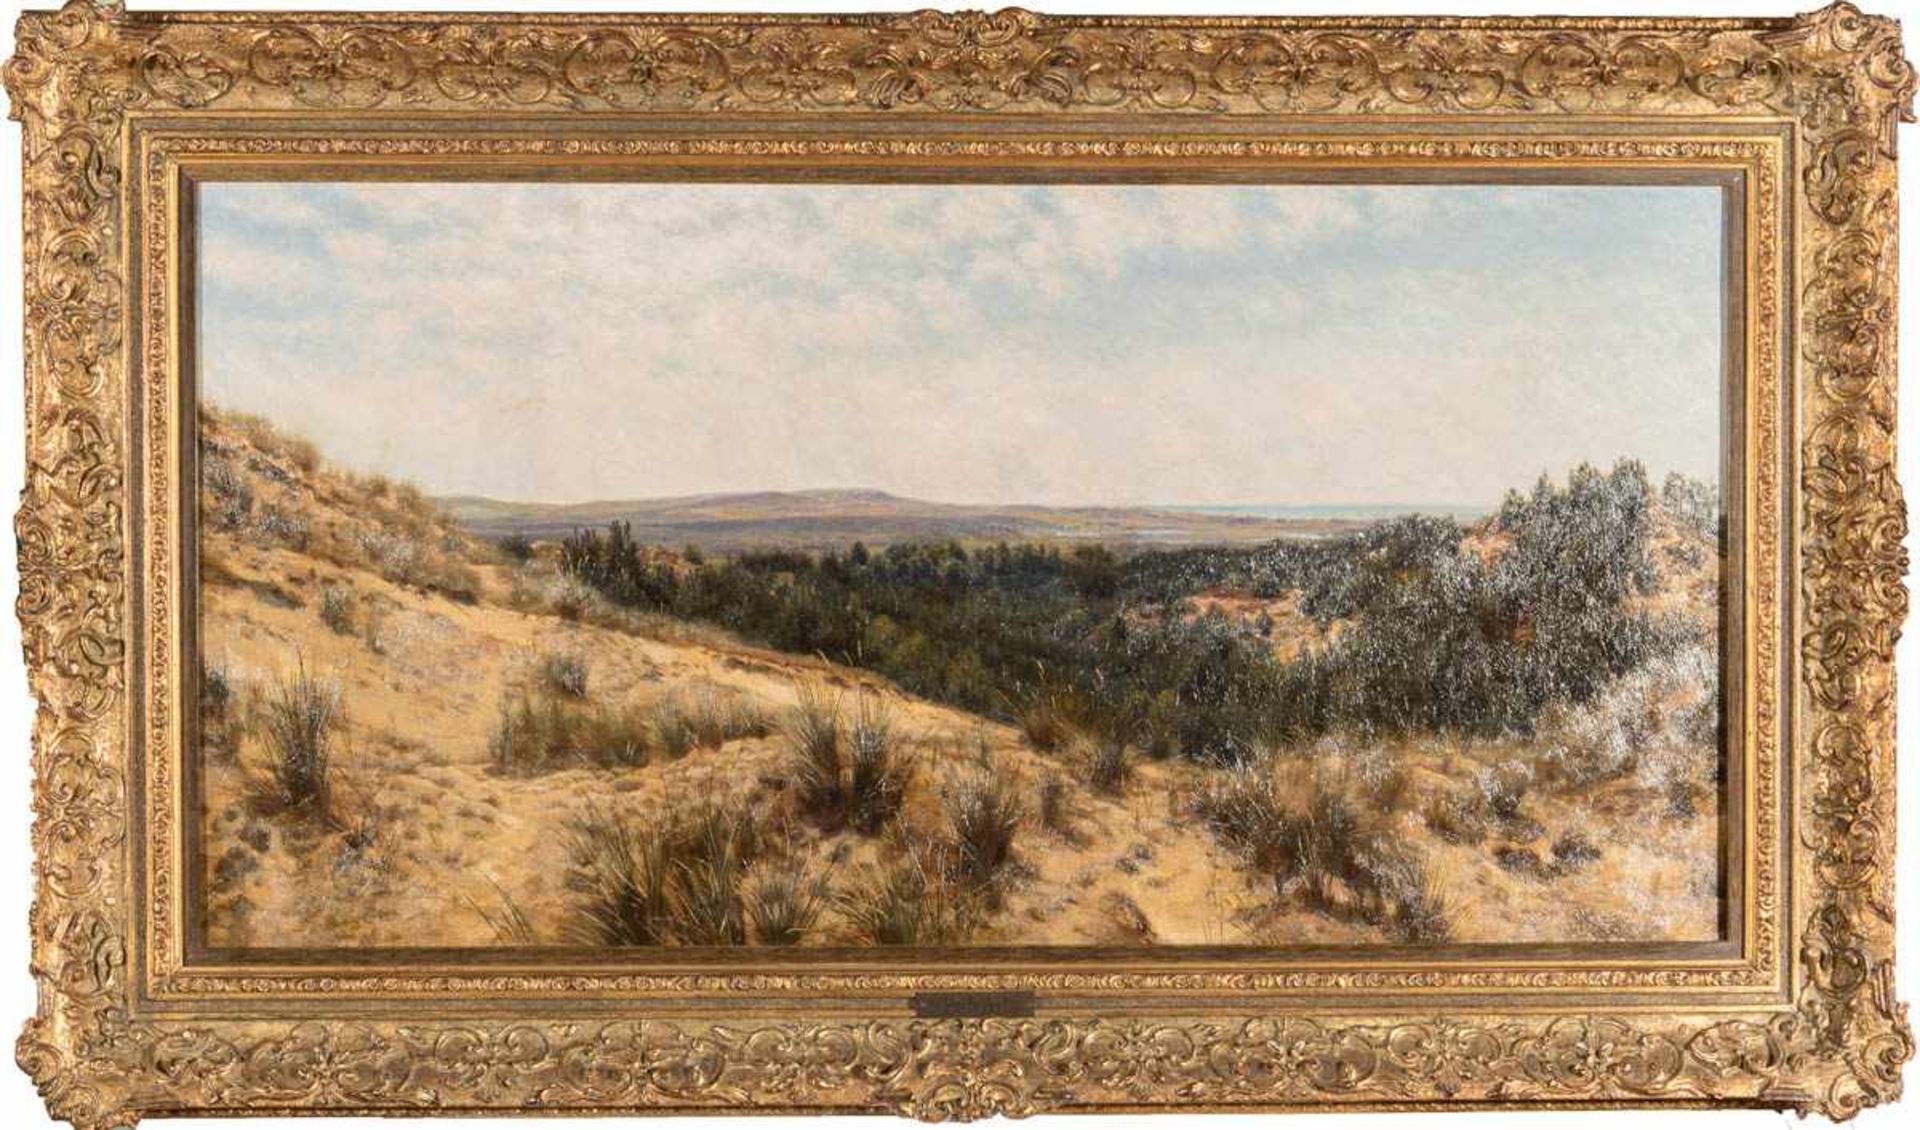 Davis, Henry, William, Banks (1833 - 1914, englischer Landschafts- und Tiermaler), Englisches